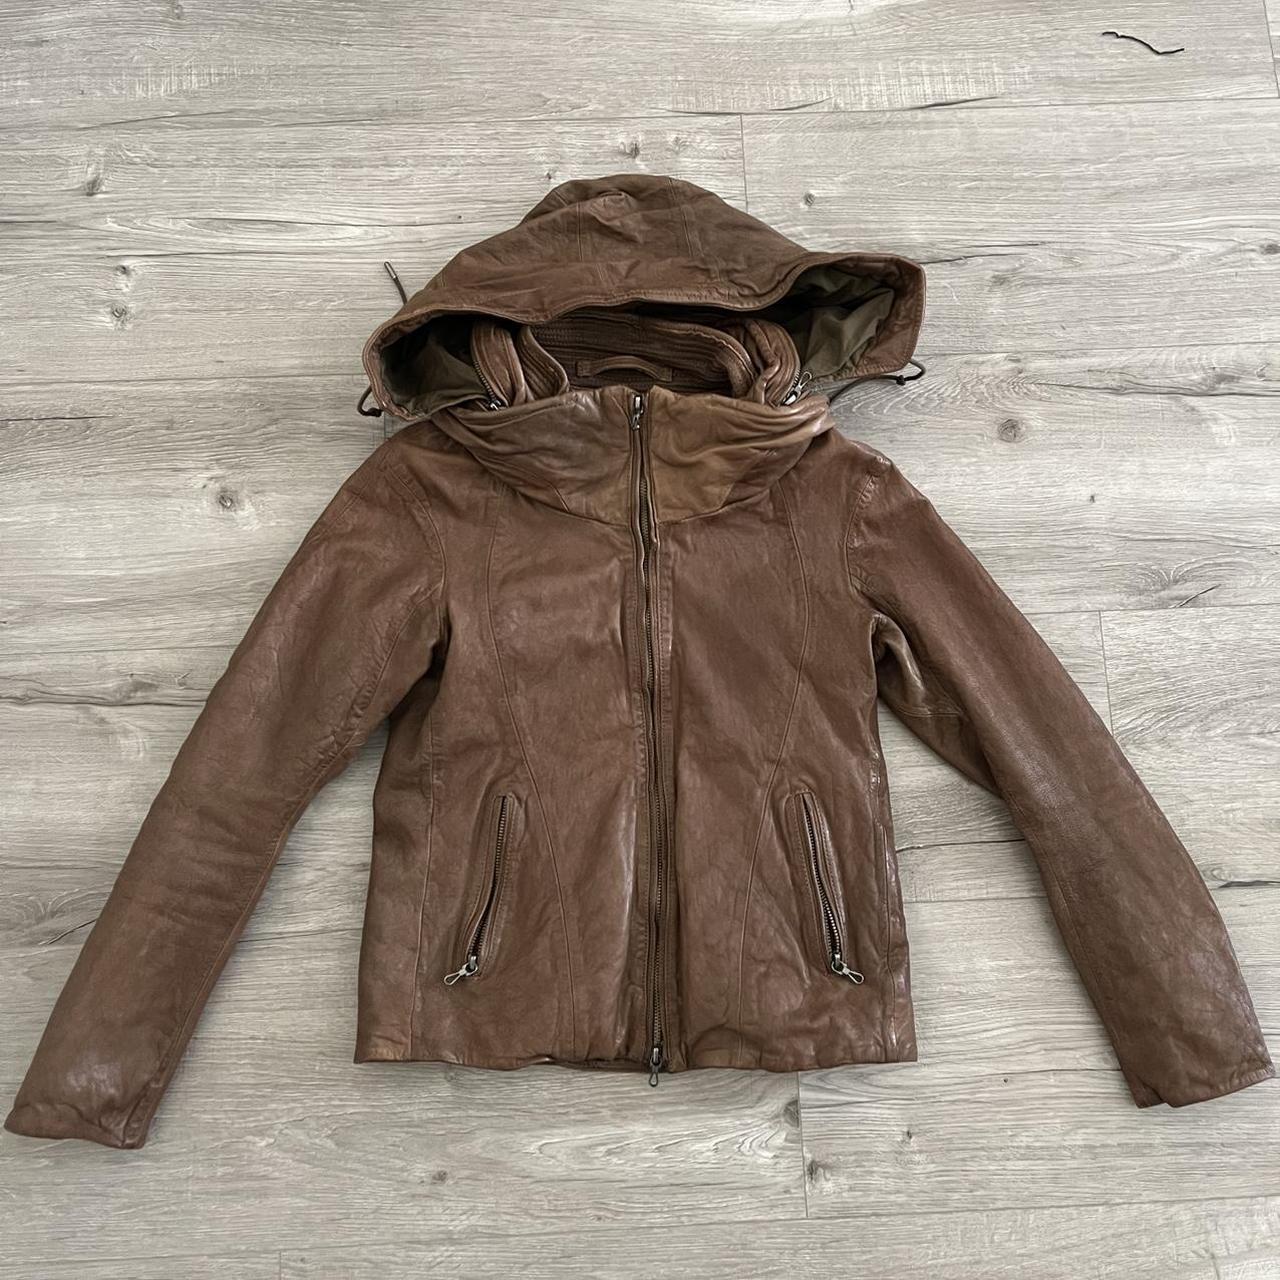 Vintage GOA leather bono jacket size S, one of my...